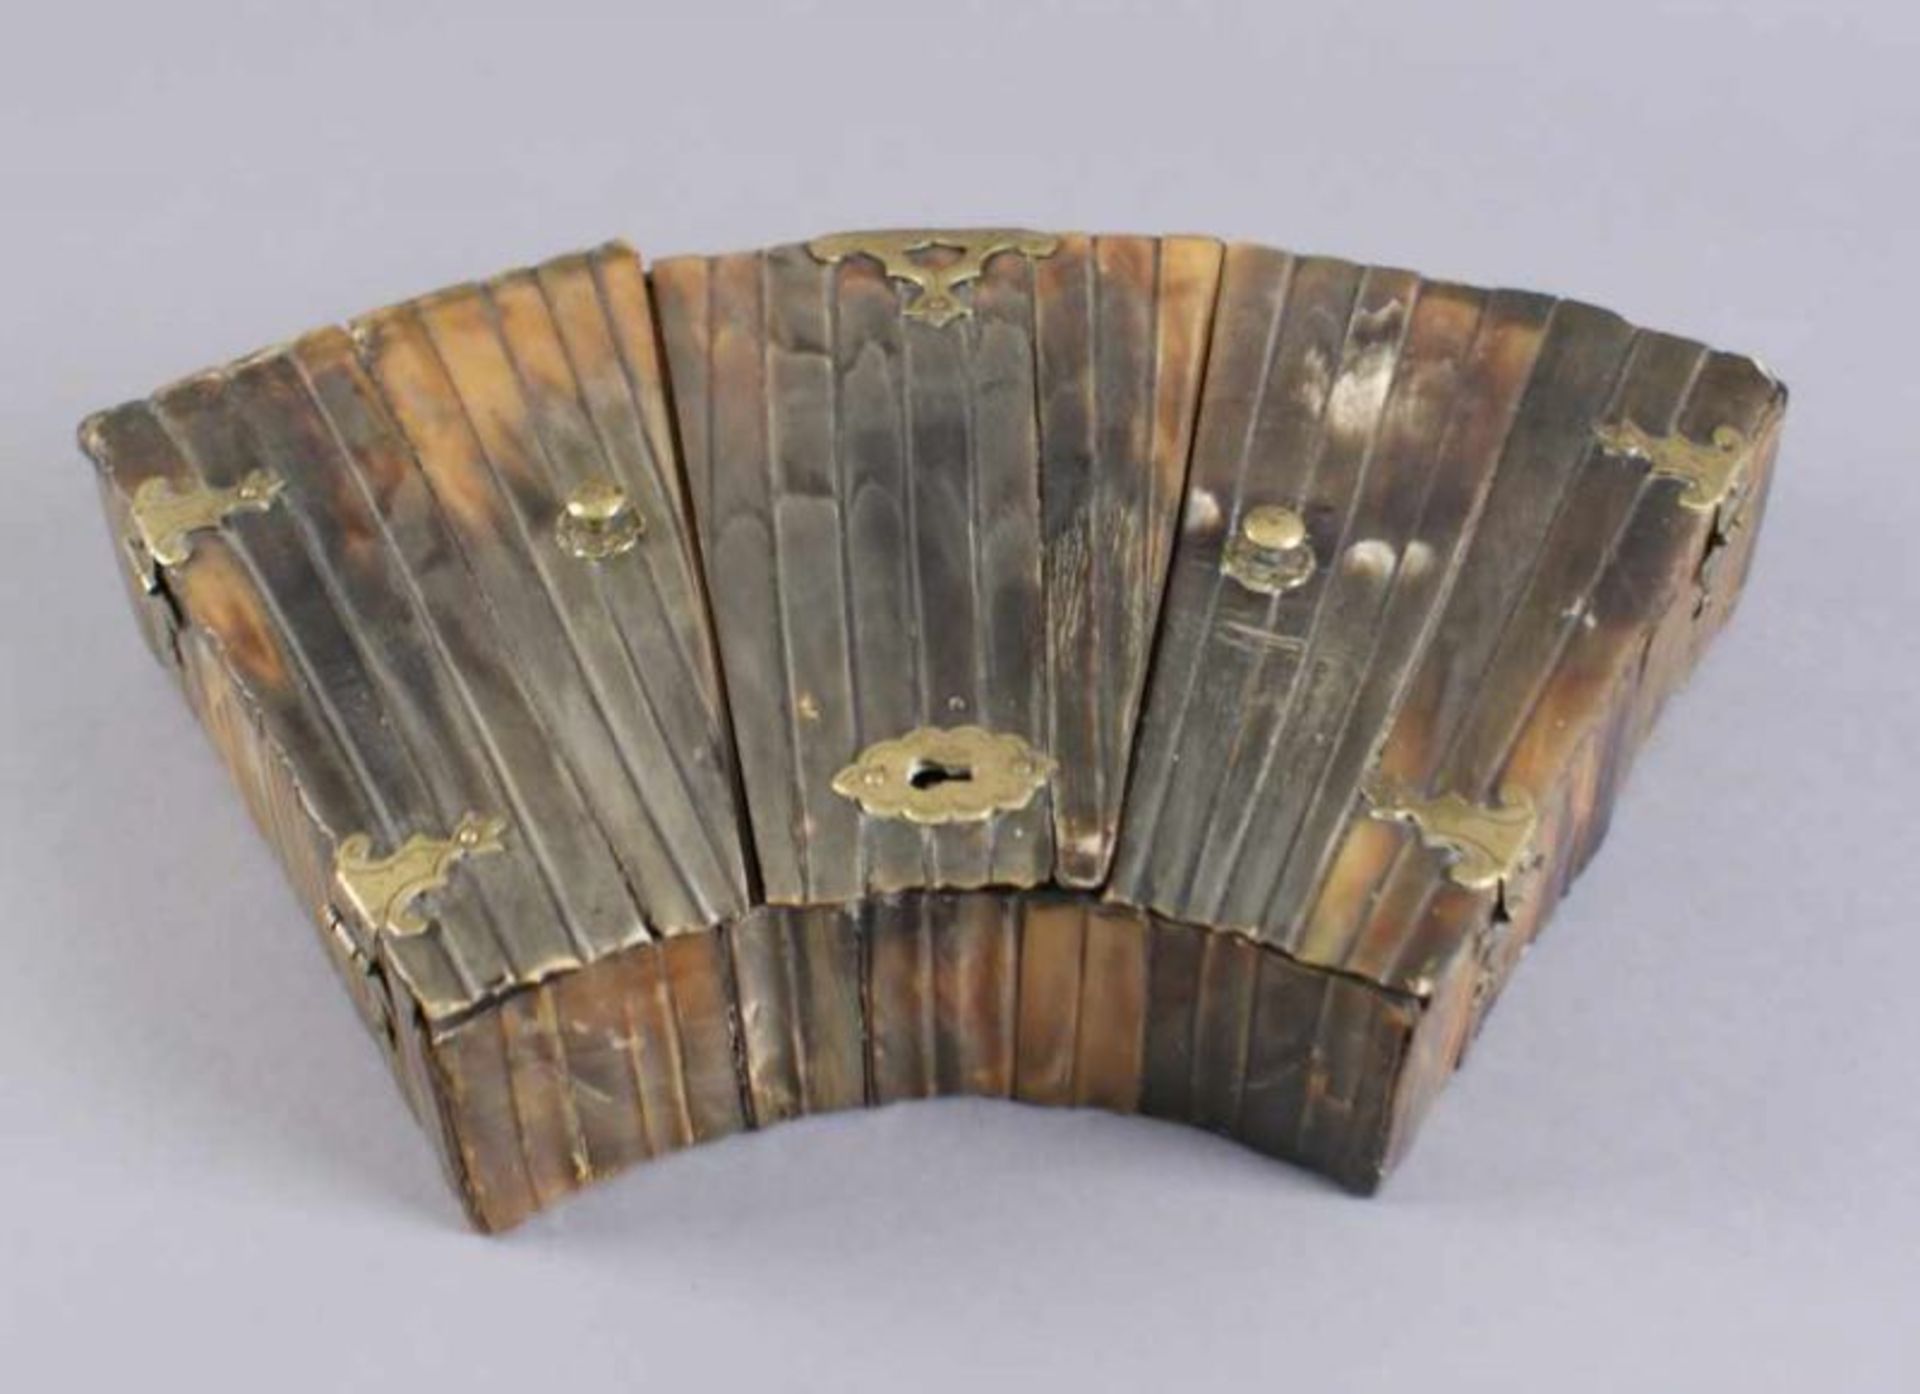 Fächerförmige Schatulle, Holzkorpus mit Walrossknochen besetzt, 17. JH, 6x33x18 cm 20.17 % buyer's - Bild 6 aus 8